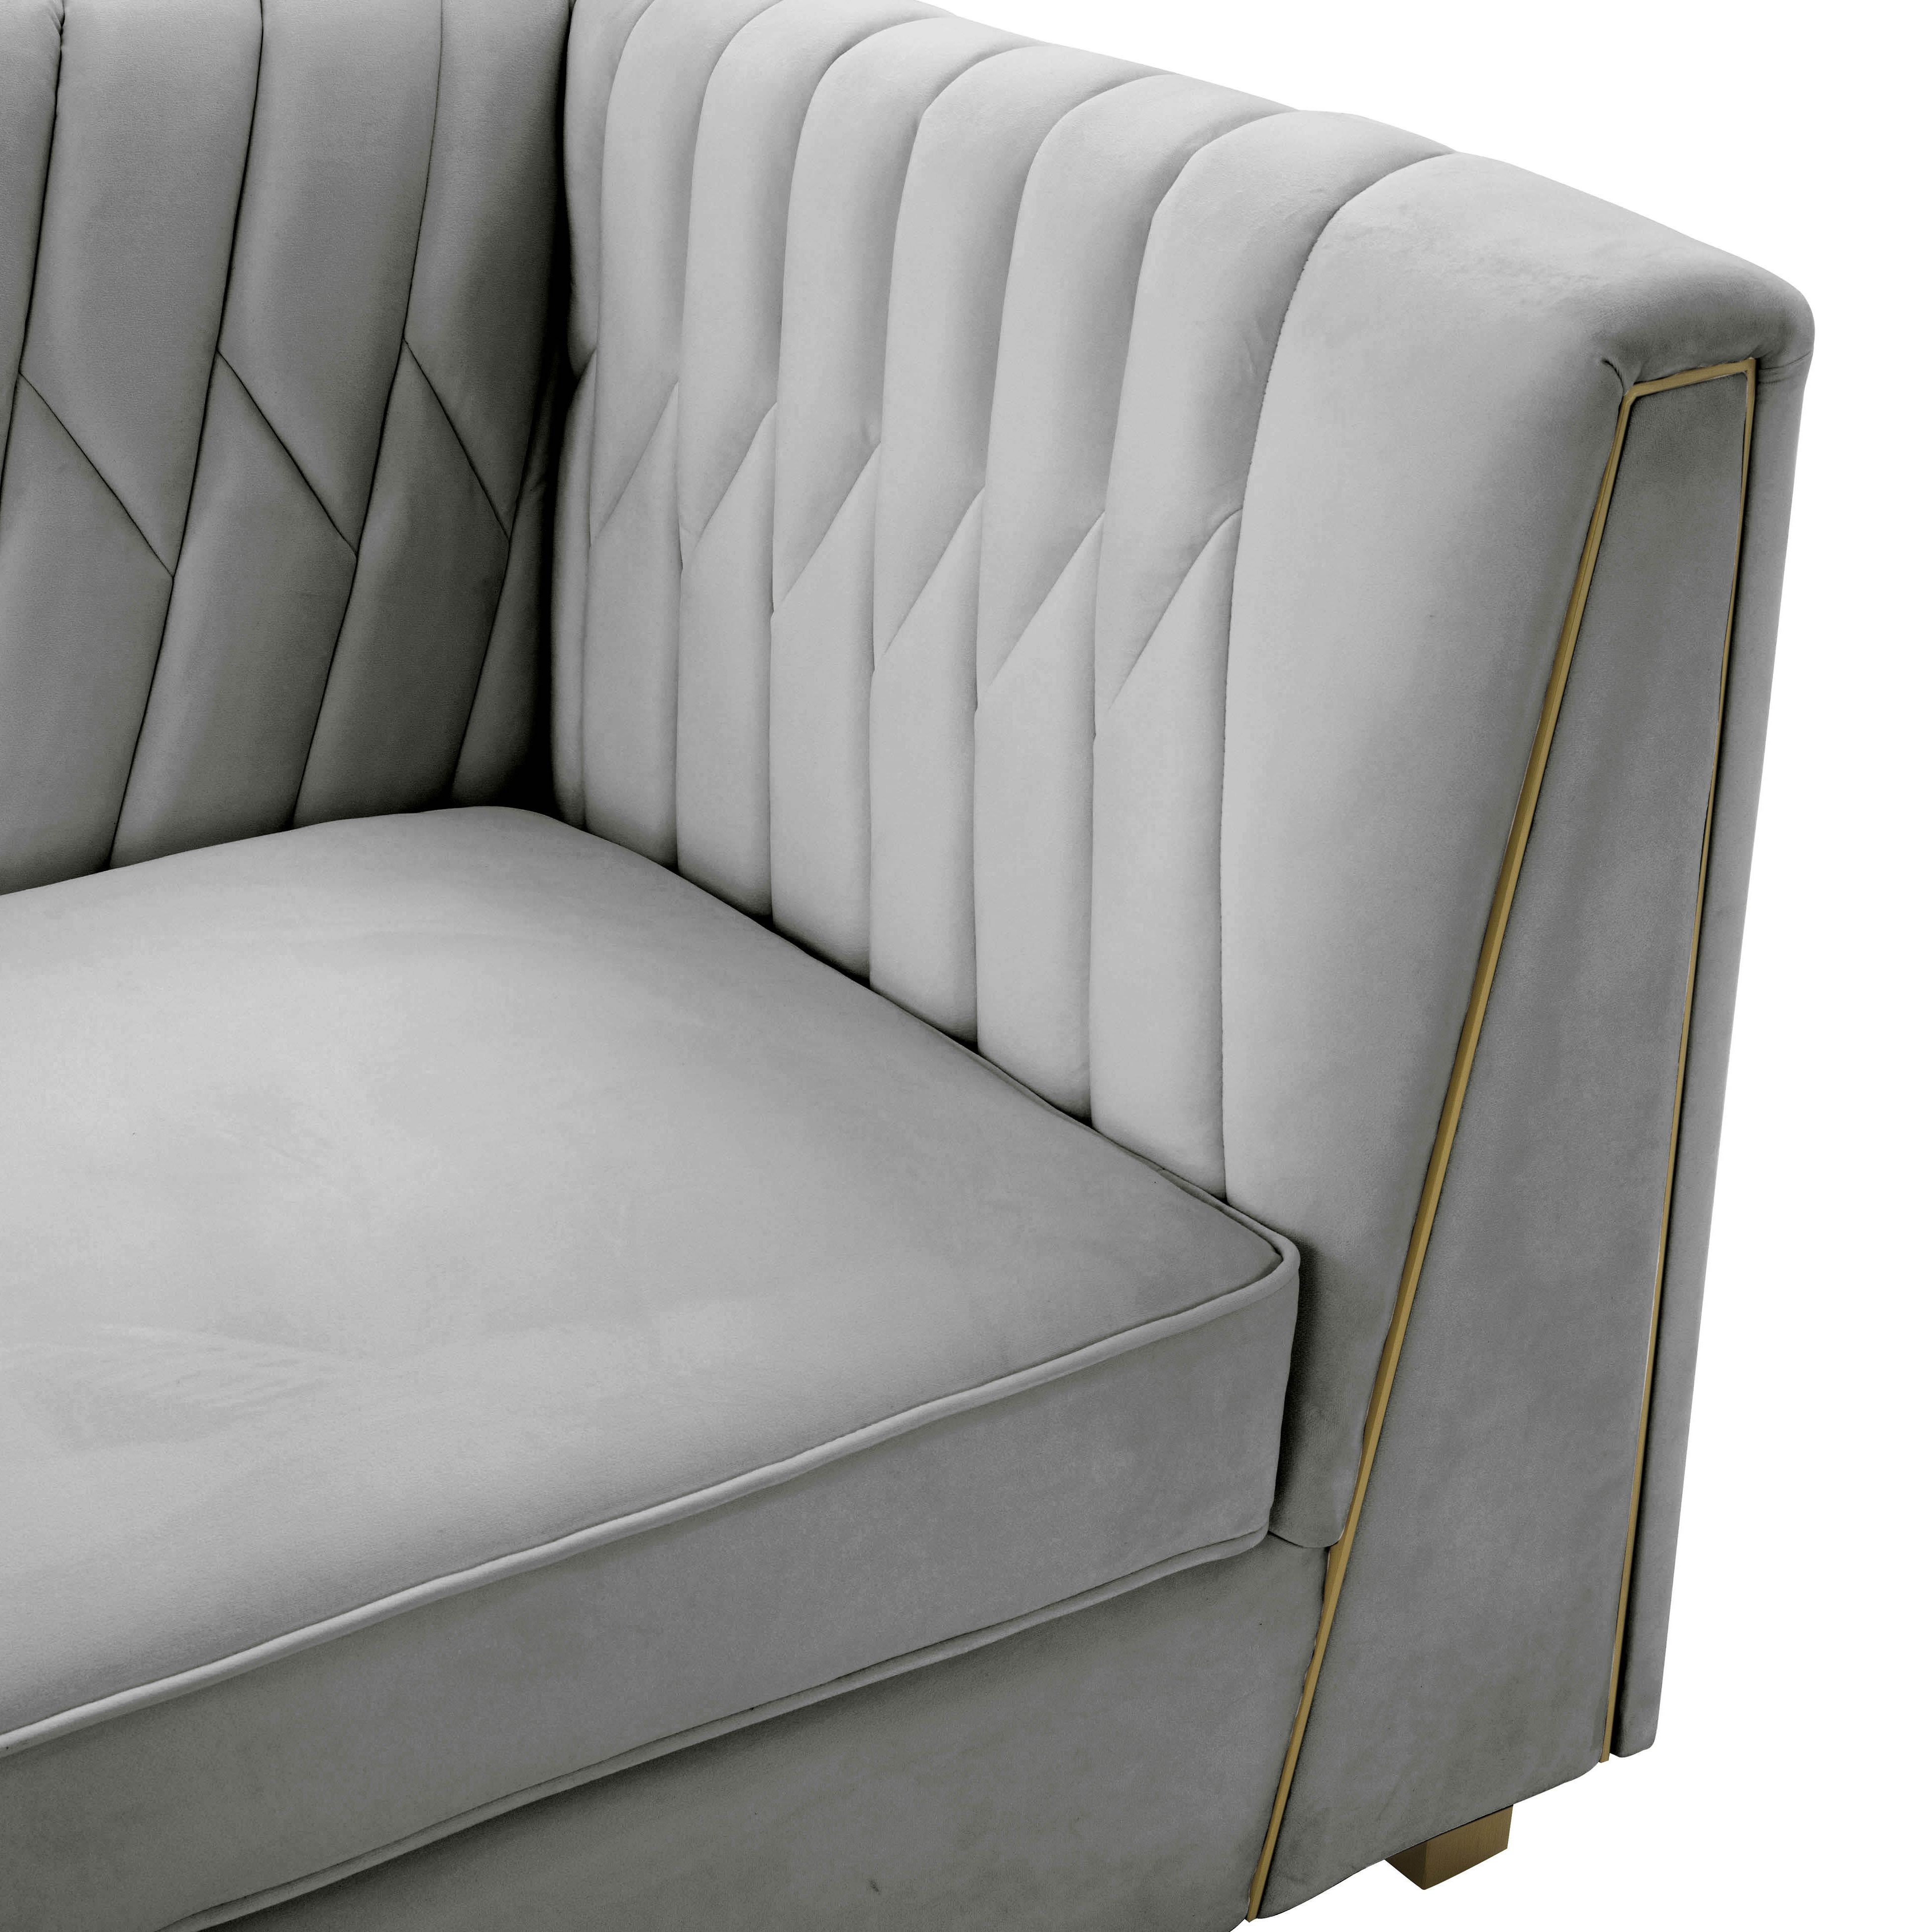 Wafa Light Grey Velvet Sofainspire Me! Home Decor – Tov Furniture For Light Gray Velvet Sofas (Gallery 2 of 20)